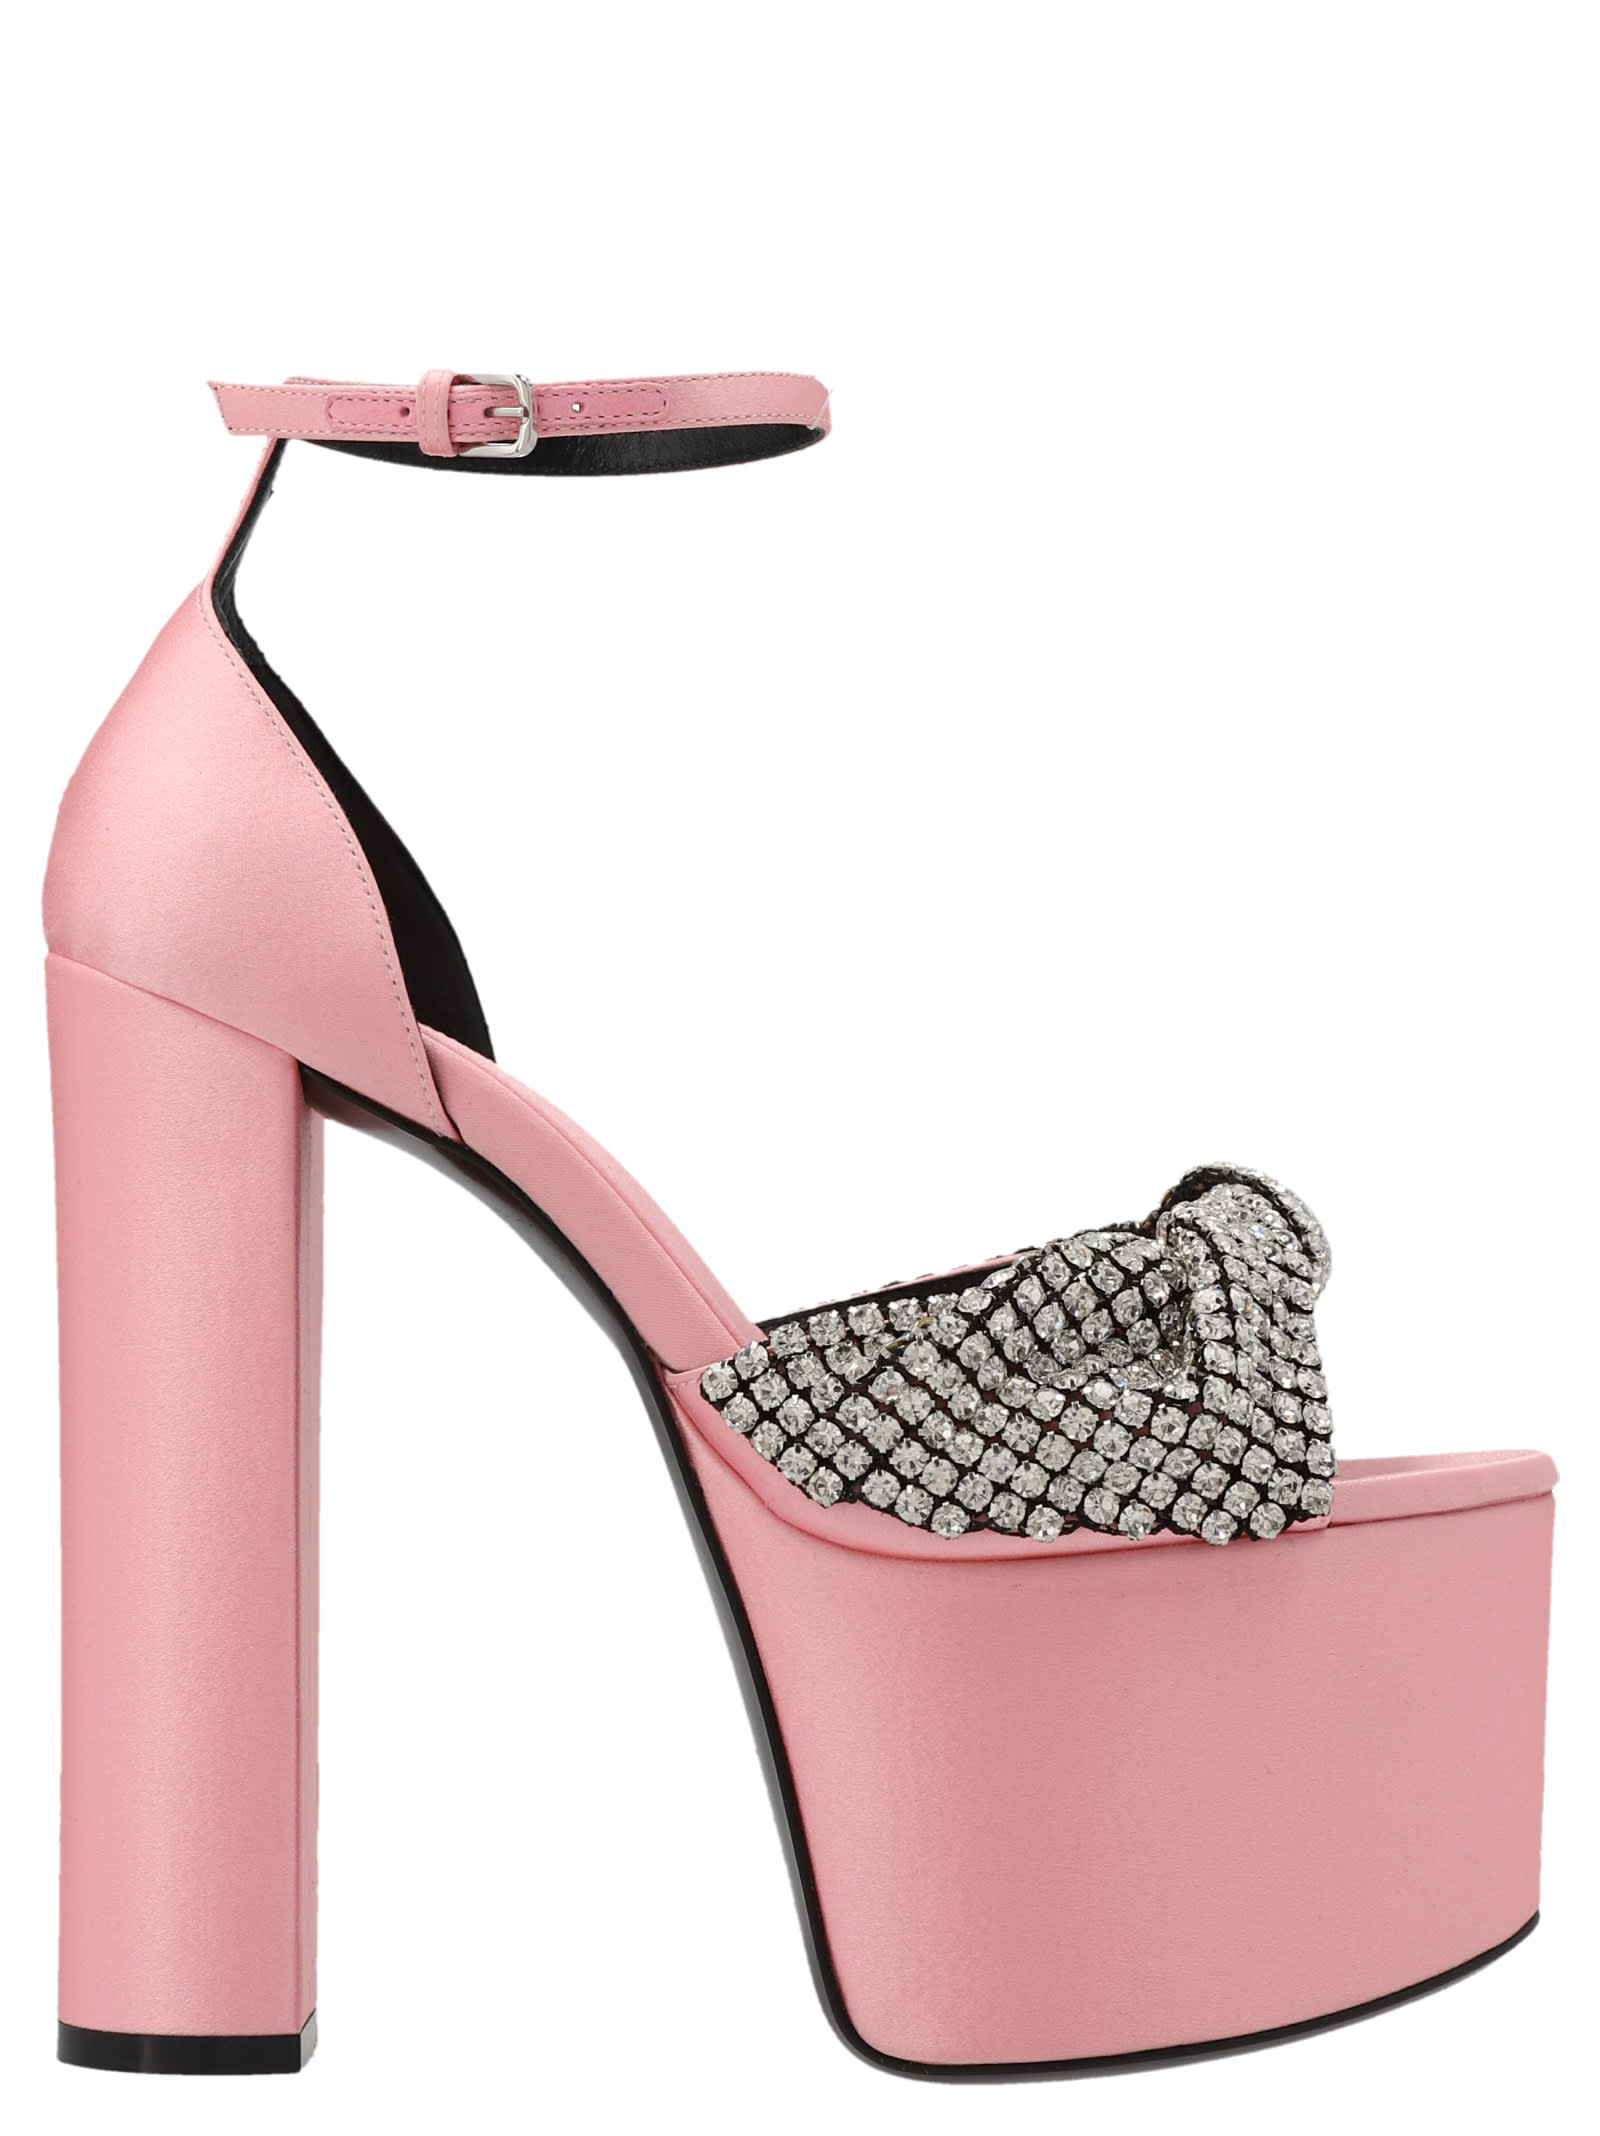 Shop Sergio Rossi Evangelie Sandals By Mr. Patentie Rossi X Evangelie Smyrniotaki In Pink